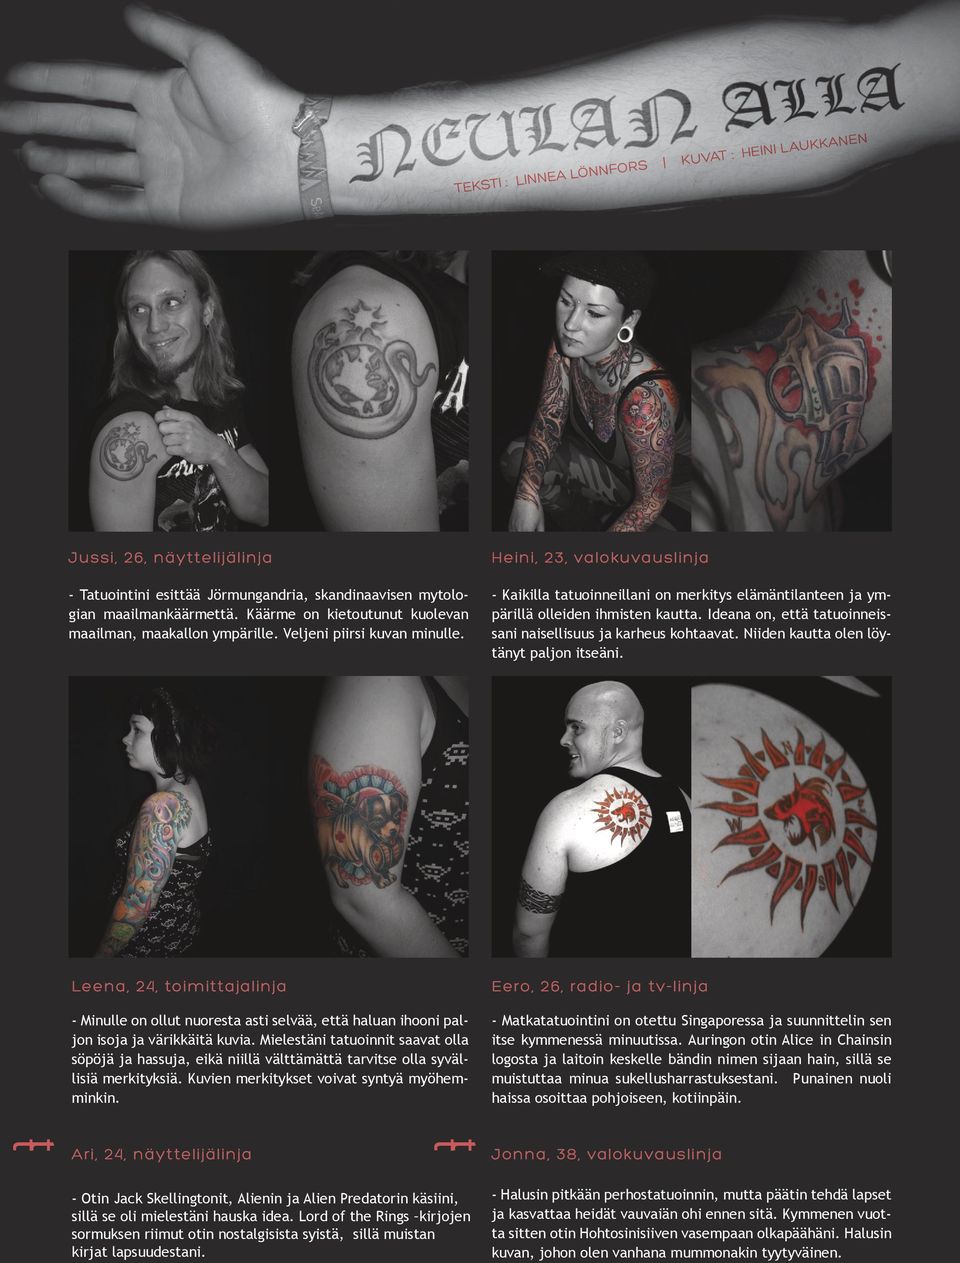 Heini, 23, valokuvauslinja - Kaikilla tatuoinneillani on merkitys elämäntilanteen ja ympärillä olleiden ihmisten kautta. Ideana on, että tatuoinneissani naisellisuus ja karheus kohtaavat.